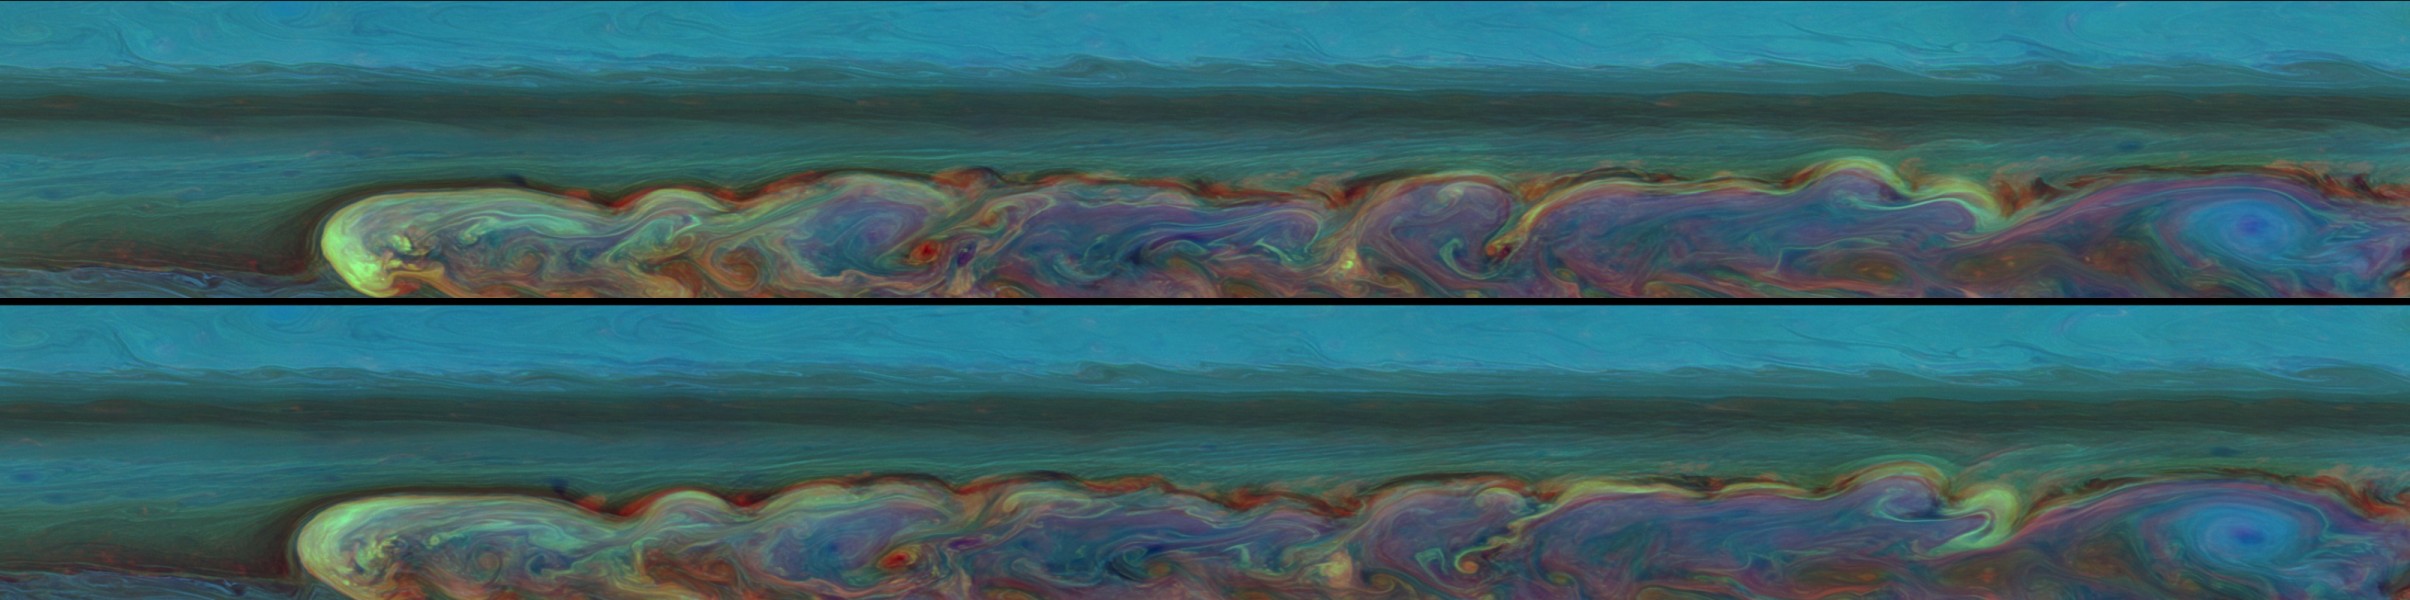 Das Bild besteht aus zwei breiten Bildteilen, die übereinander angeordnet sind. Beide Bilder zeigen einen langen Sturm, der in Falschfarben-blau eingefärbt ist.